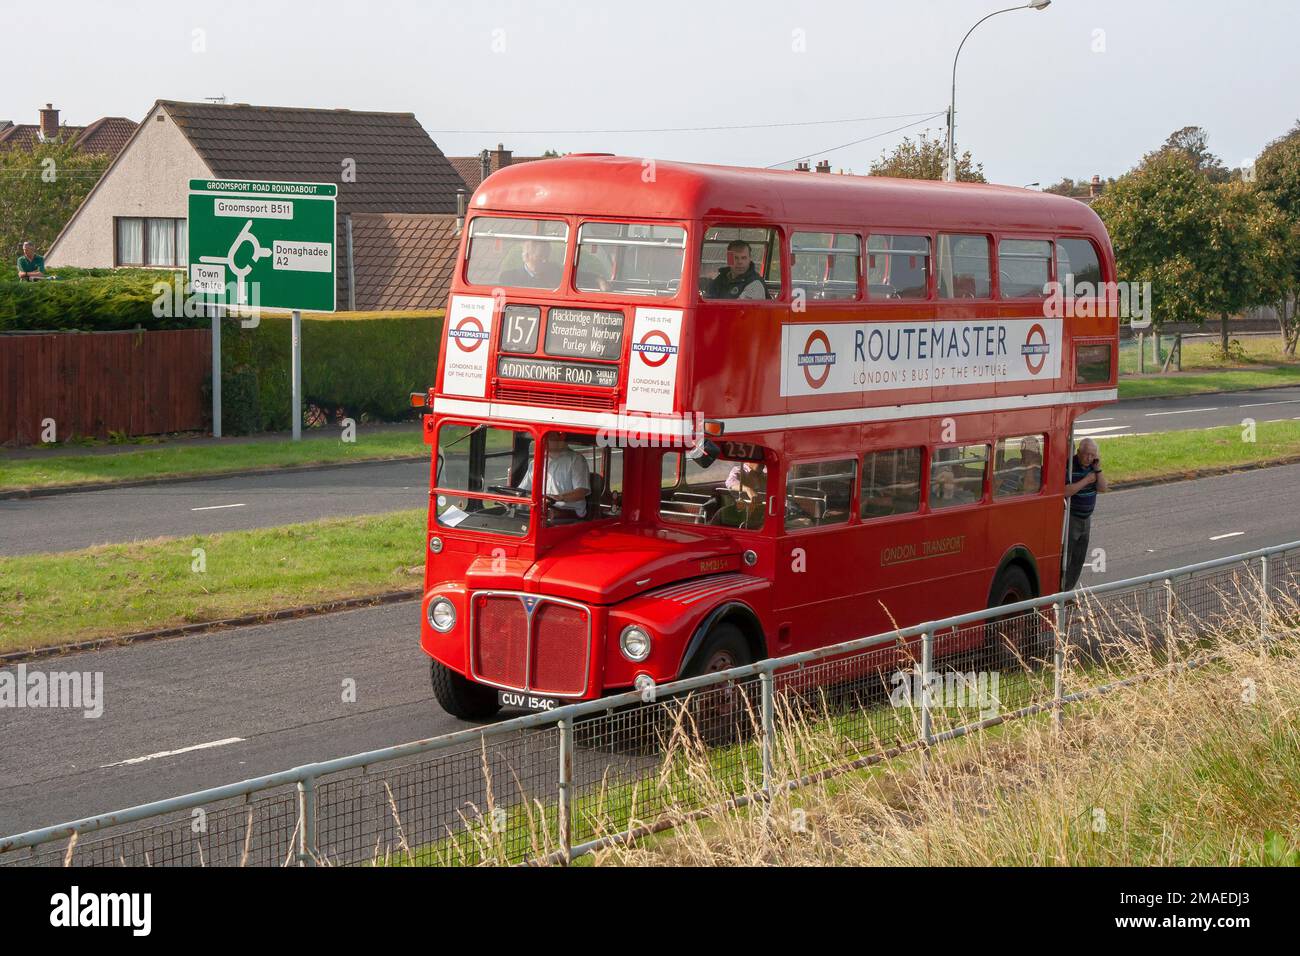 13 sept 2014 Un bus AEG Routemaster London transport à double étage rouge vintage sur la chaussée à Bangor après une journée à une foire locale Banque D'Images